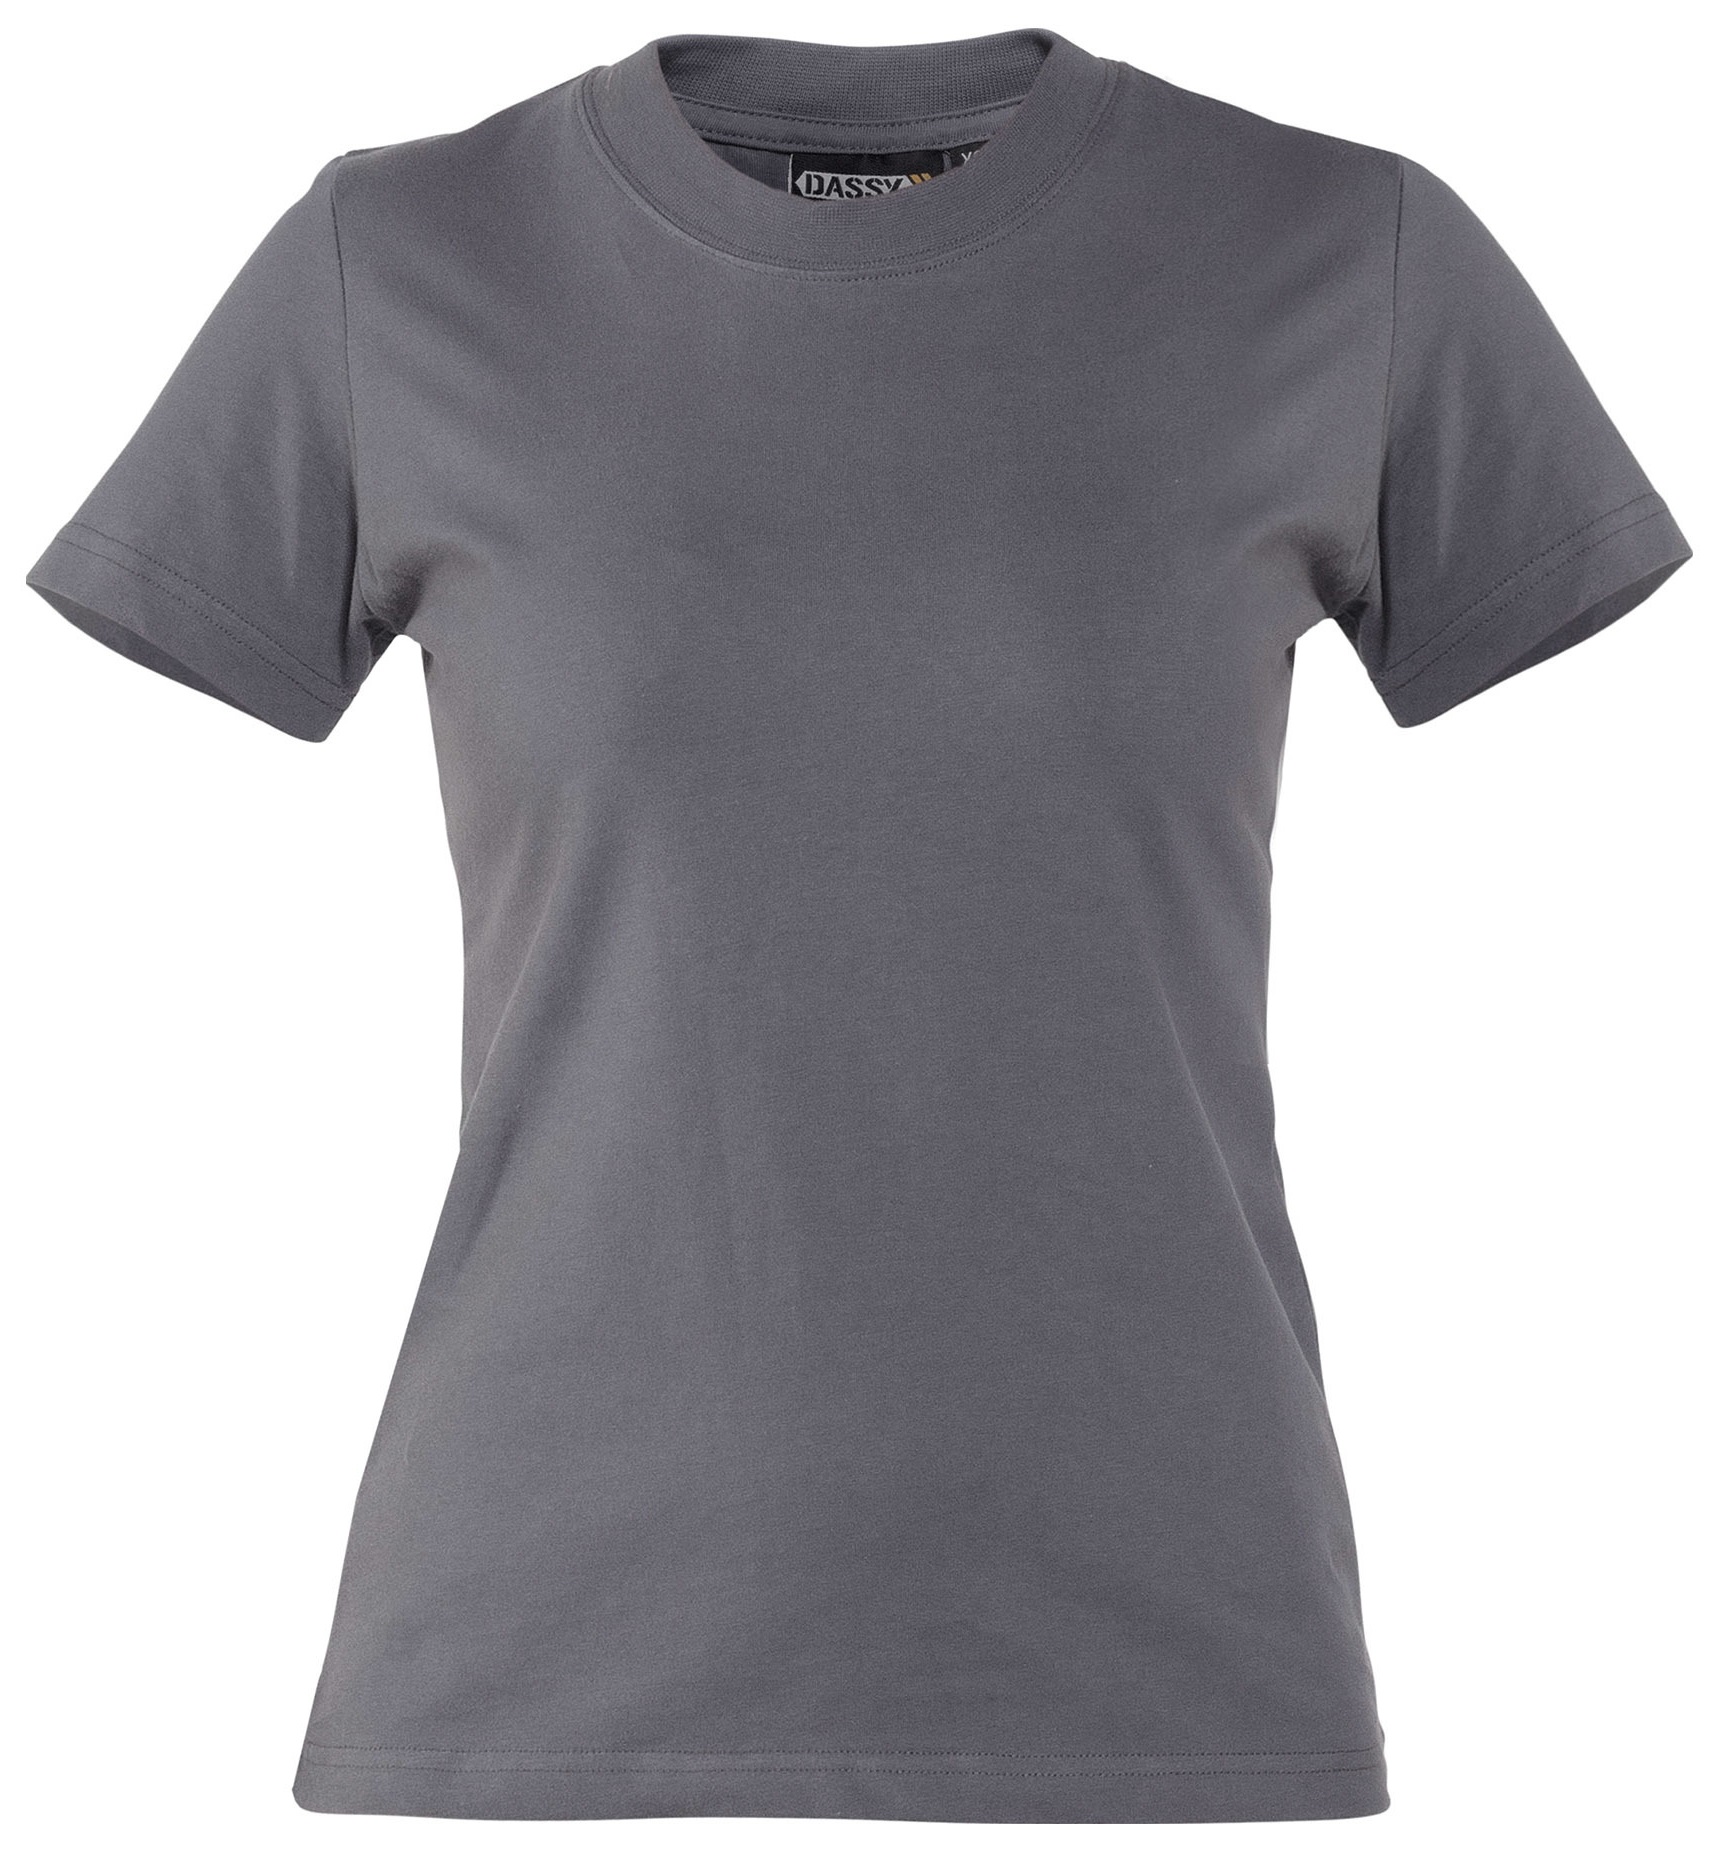 Rundhals-T-Shirt mit Firmenlogo für Damen